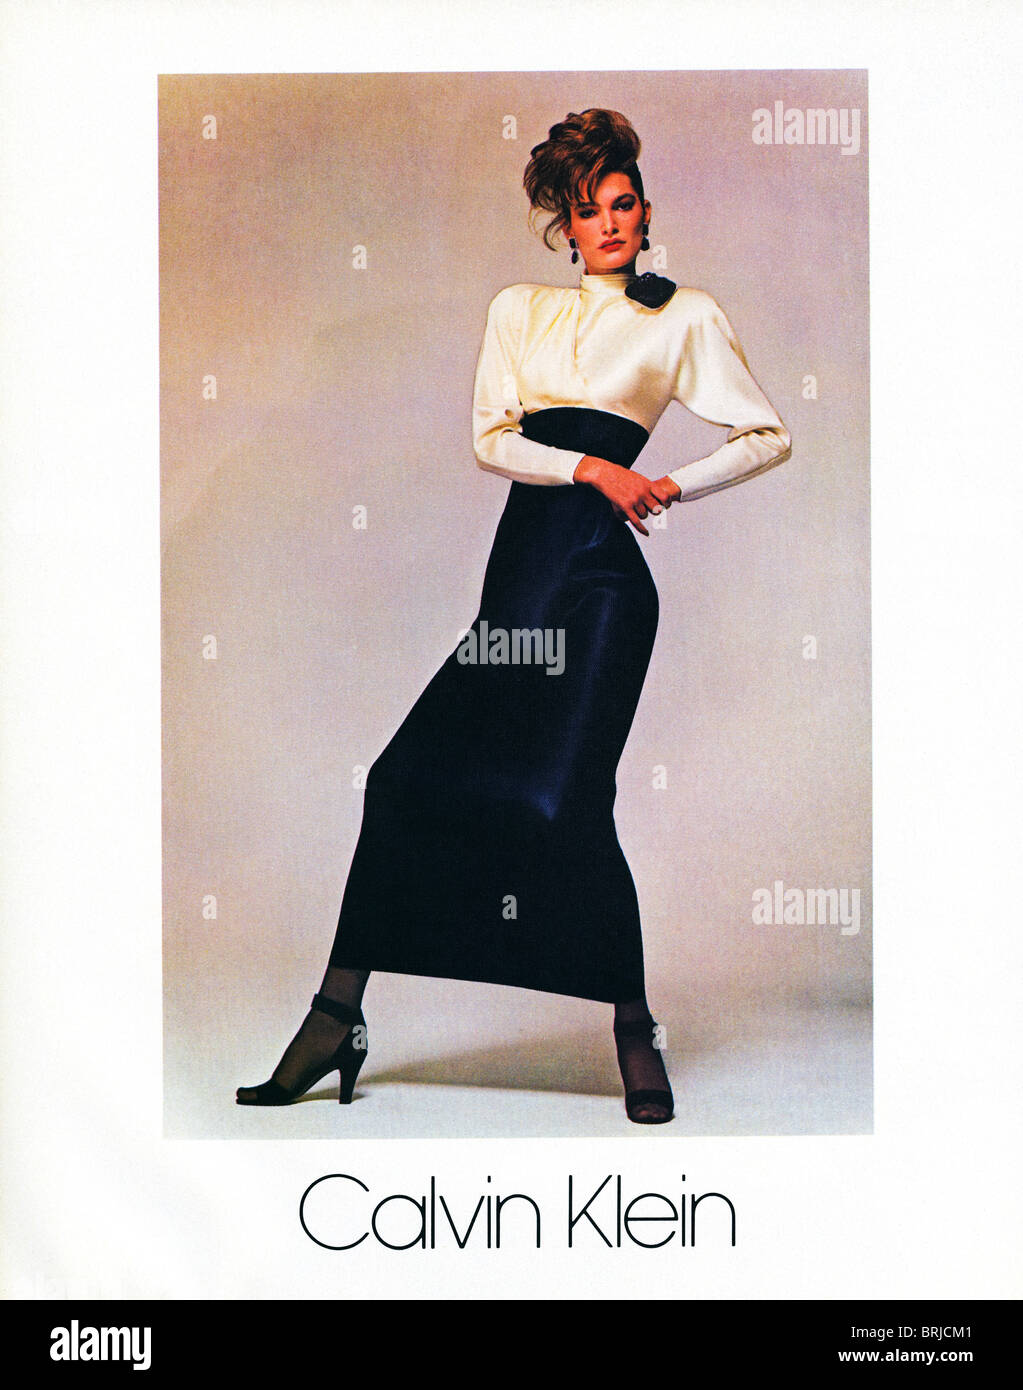 Klassische calvin klein Werbung - Werbung für Modedesigner Calvin Klein im  amerikanischen Modemagazin um 1983 Stockfotografie - Alamy